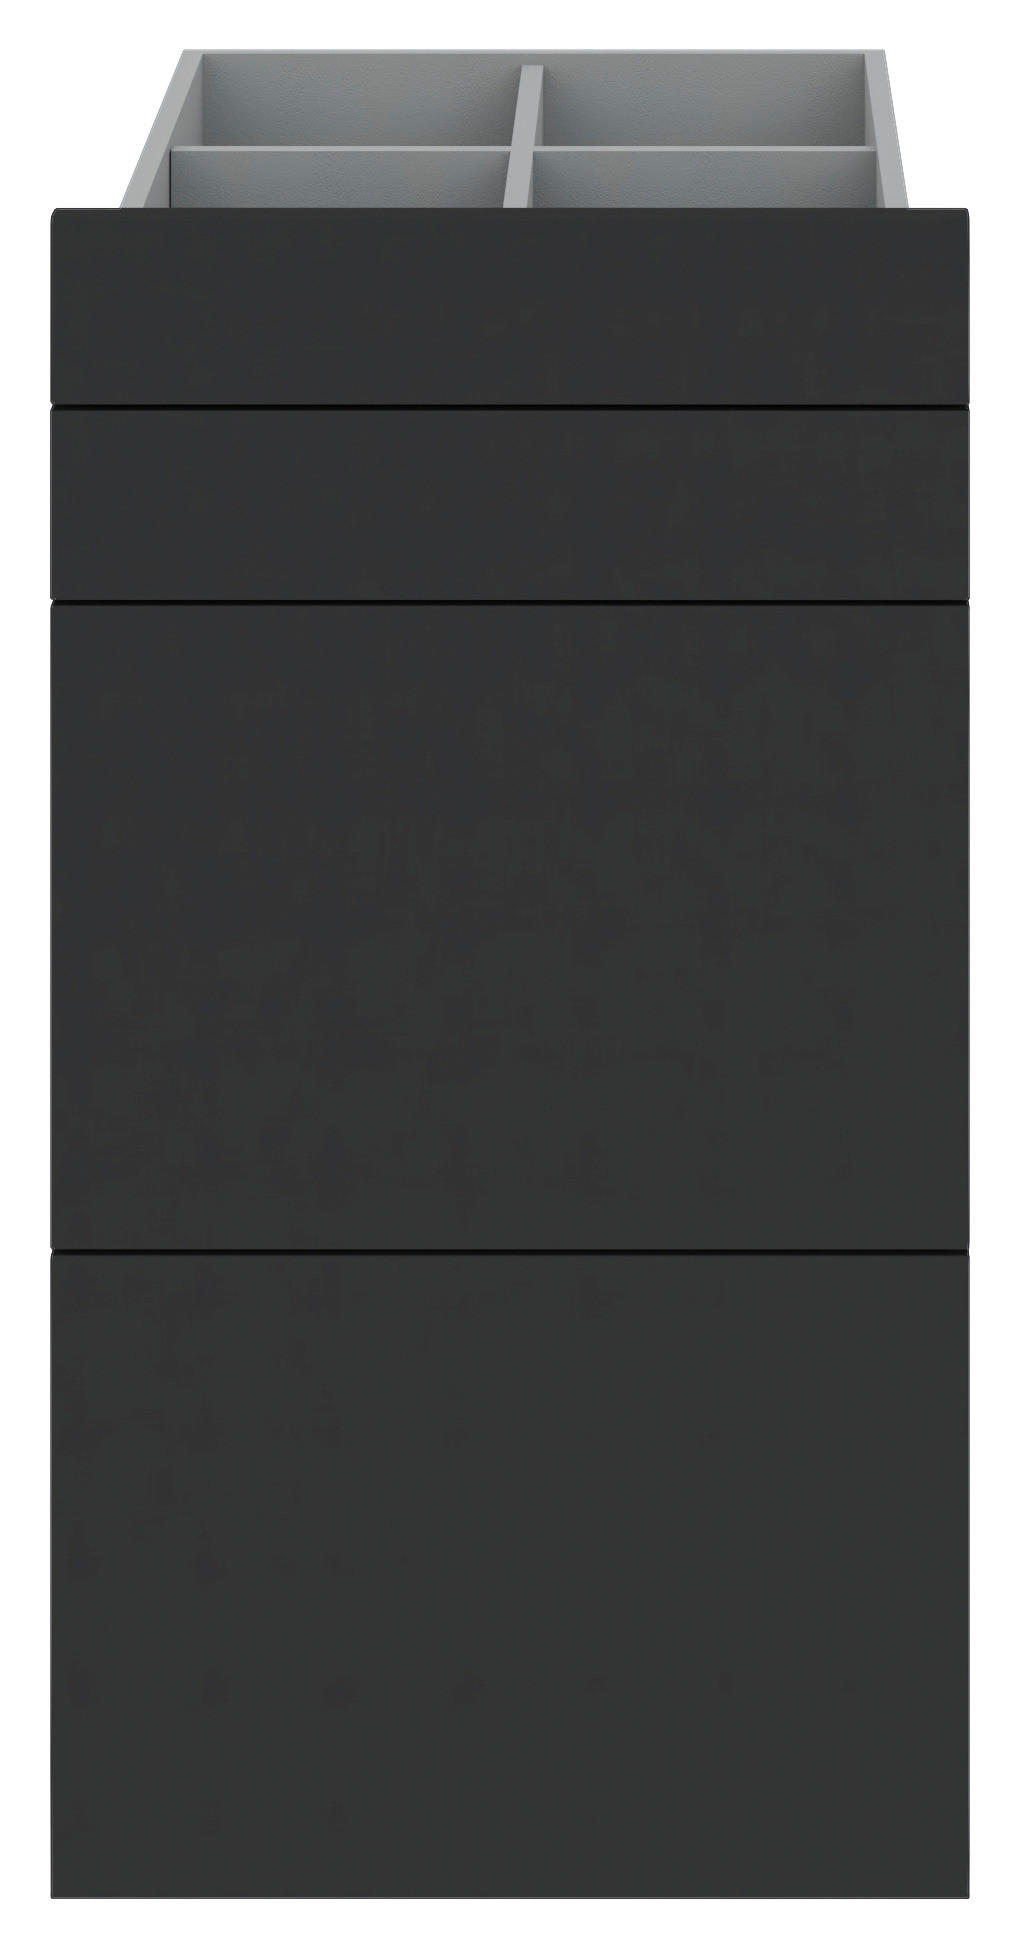 SCHUBLADENSET 45,3/83/46,8 cm Anthrazit  - Anthrazit, KONVENTIONELL (45,3/83/46,8cm) - Hom`in